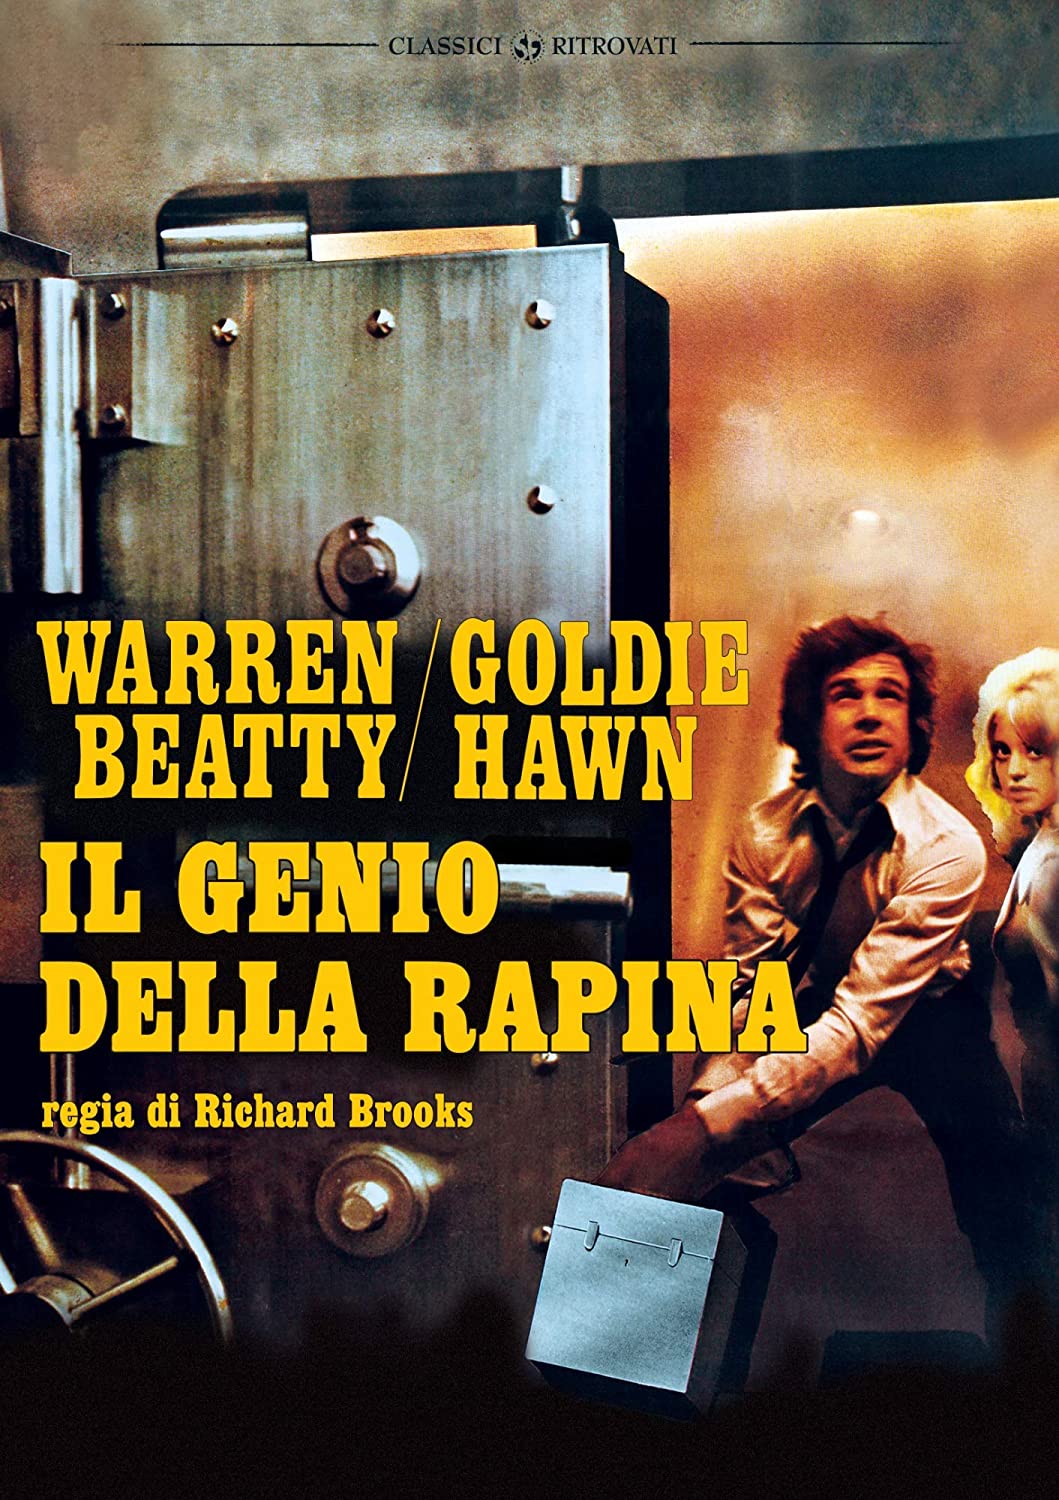 Il genio della rapina [HD] (1971)